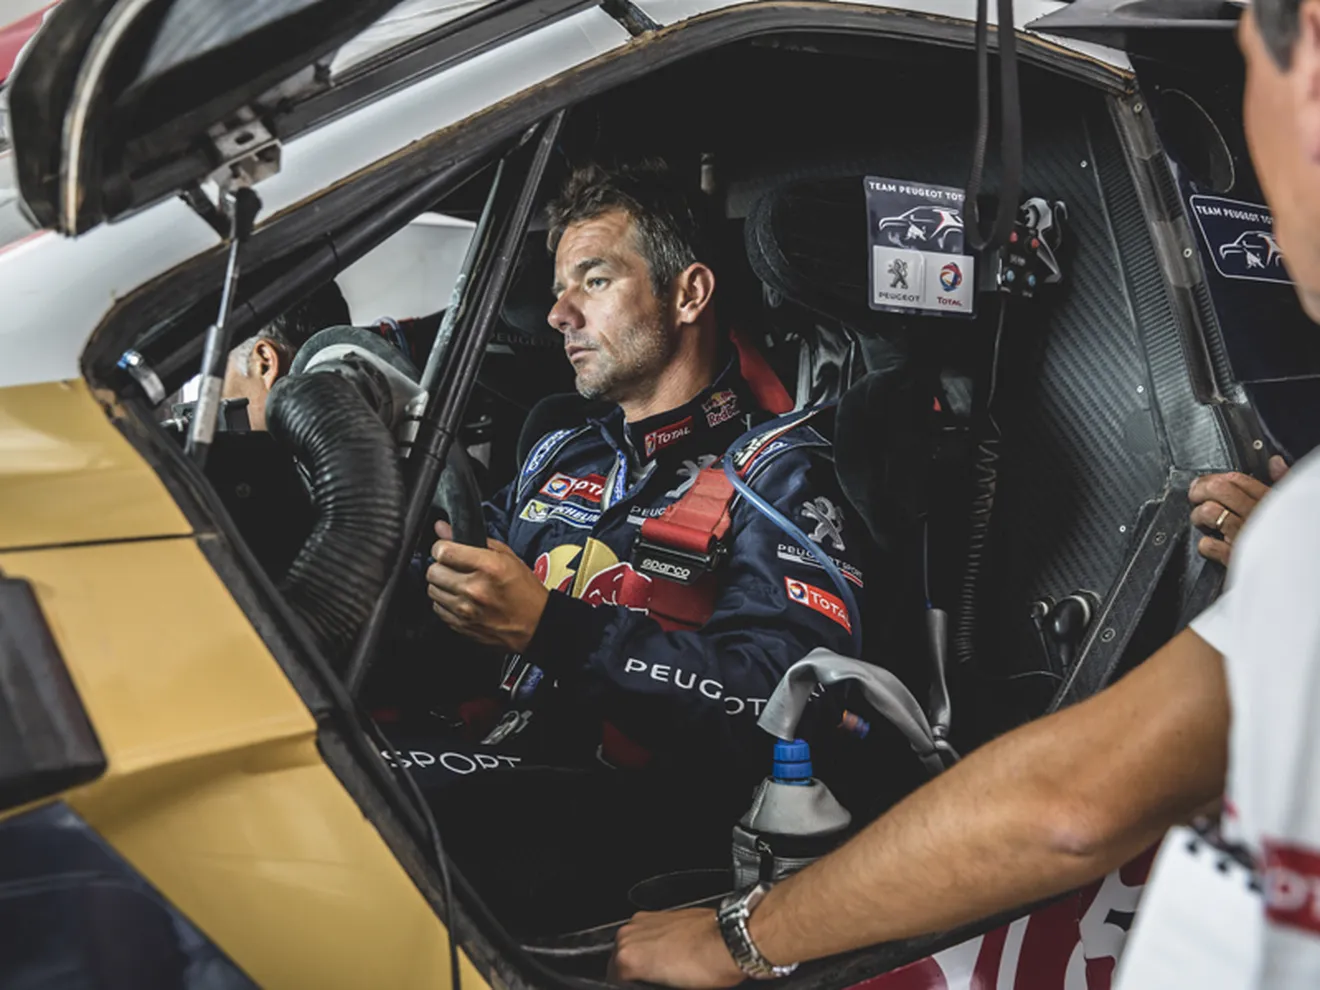 OFICIAL: Sébastien Loeb con Peugeot en el Dakar 2016